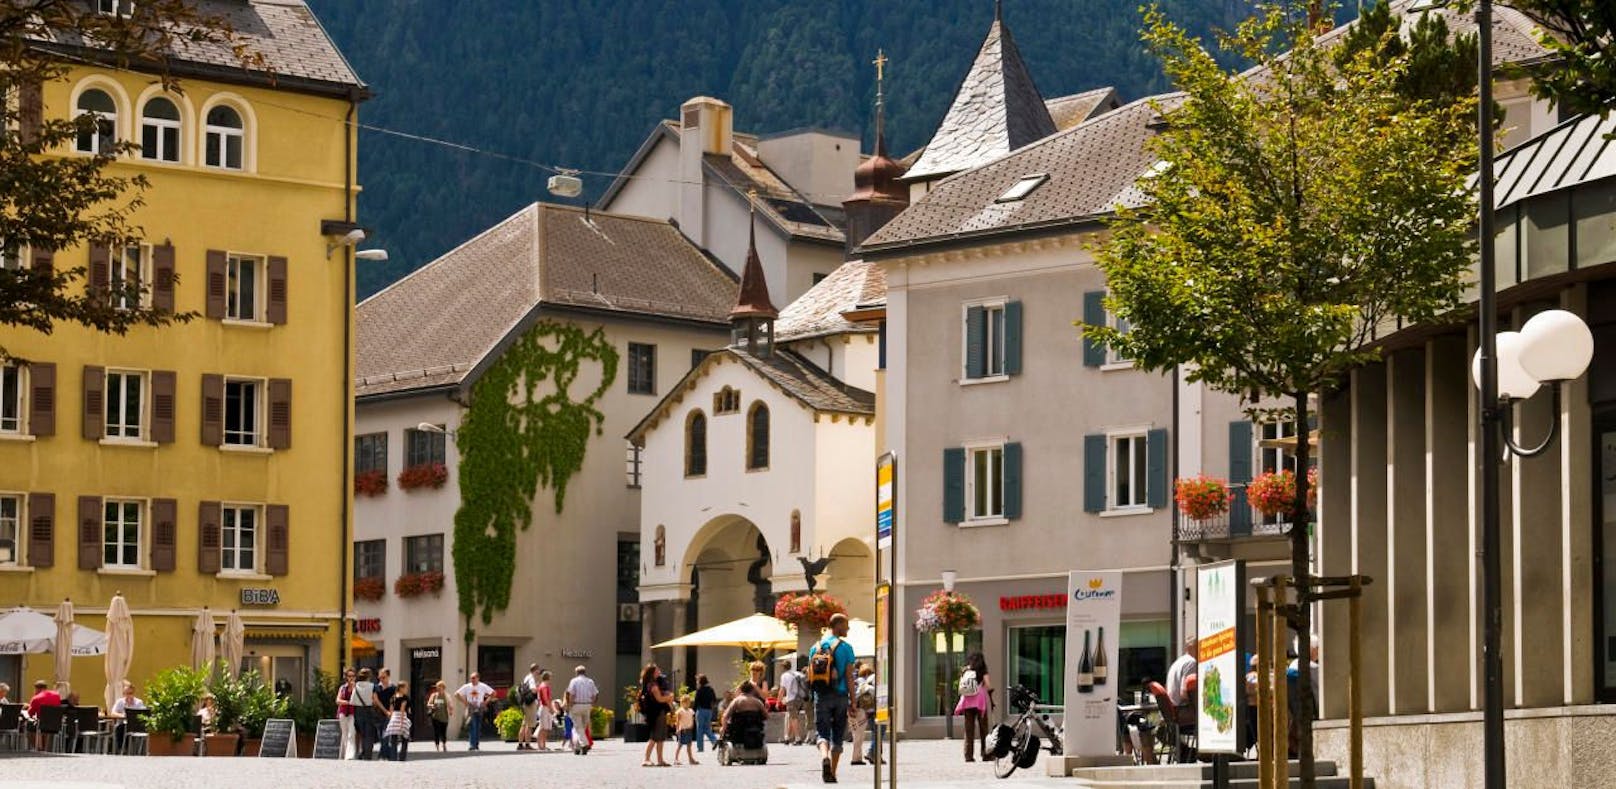 Der Hauptplatz der Gemeinde Brig im Kanton Wallis.